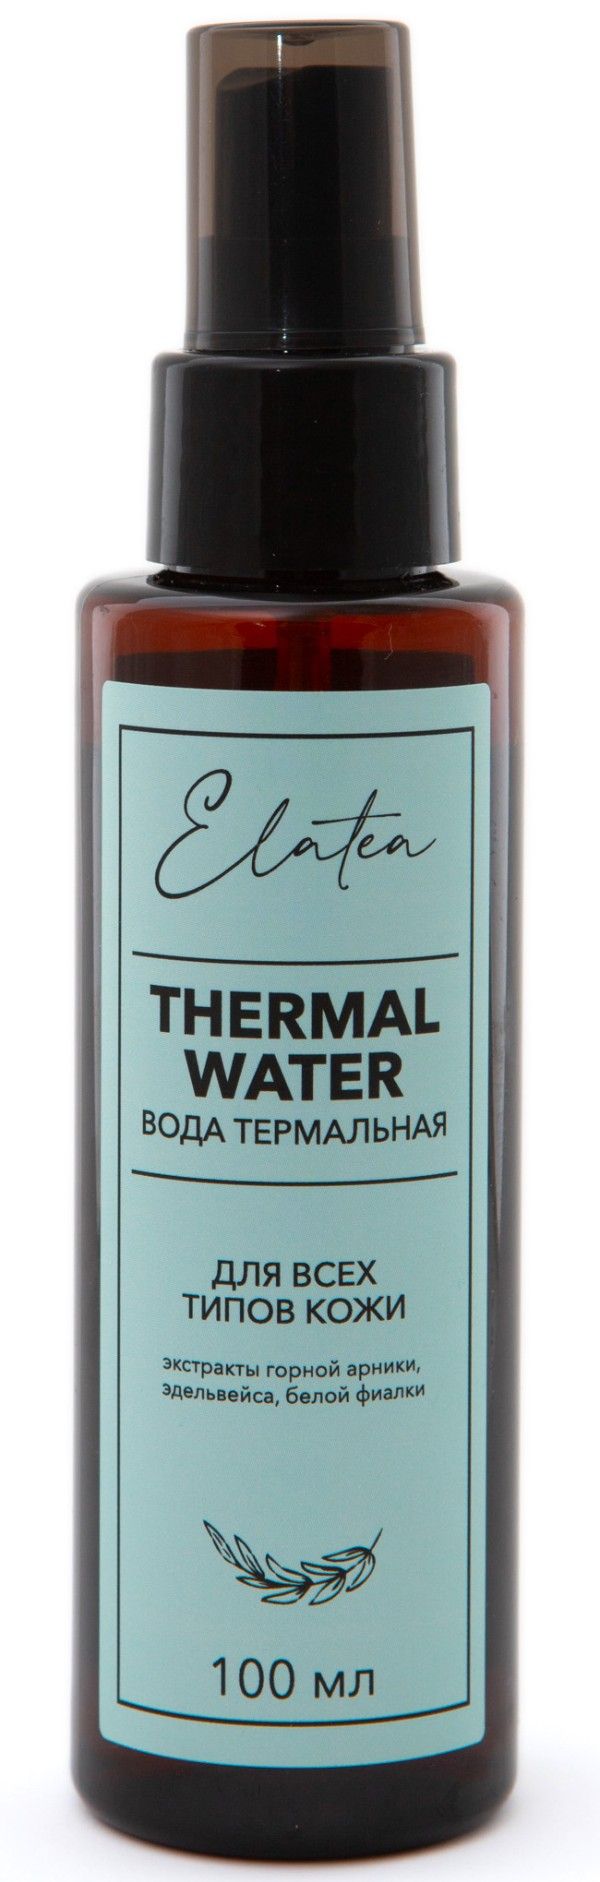 фото упаковки Elatea Вода термальная для всех типов кожи